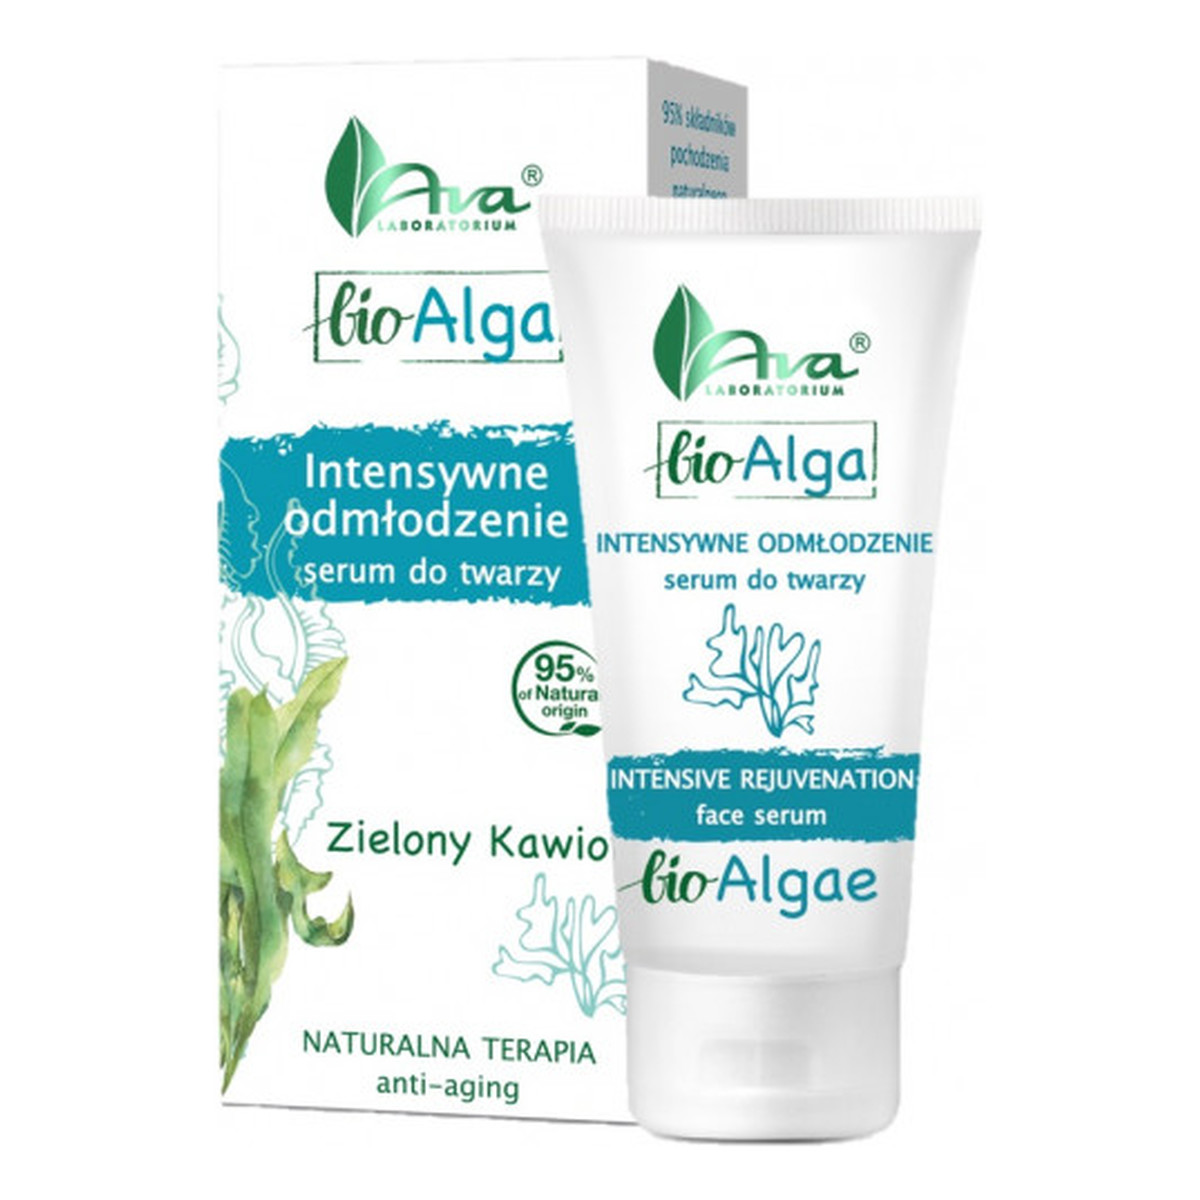 Ava Laboratorium Bio Alga Zielony Kawior Intensywne odmłodzenie serum do twarzy 50ml